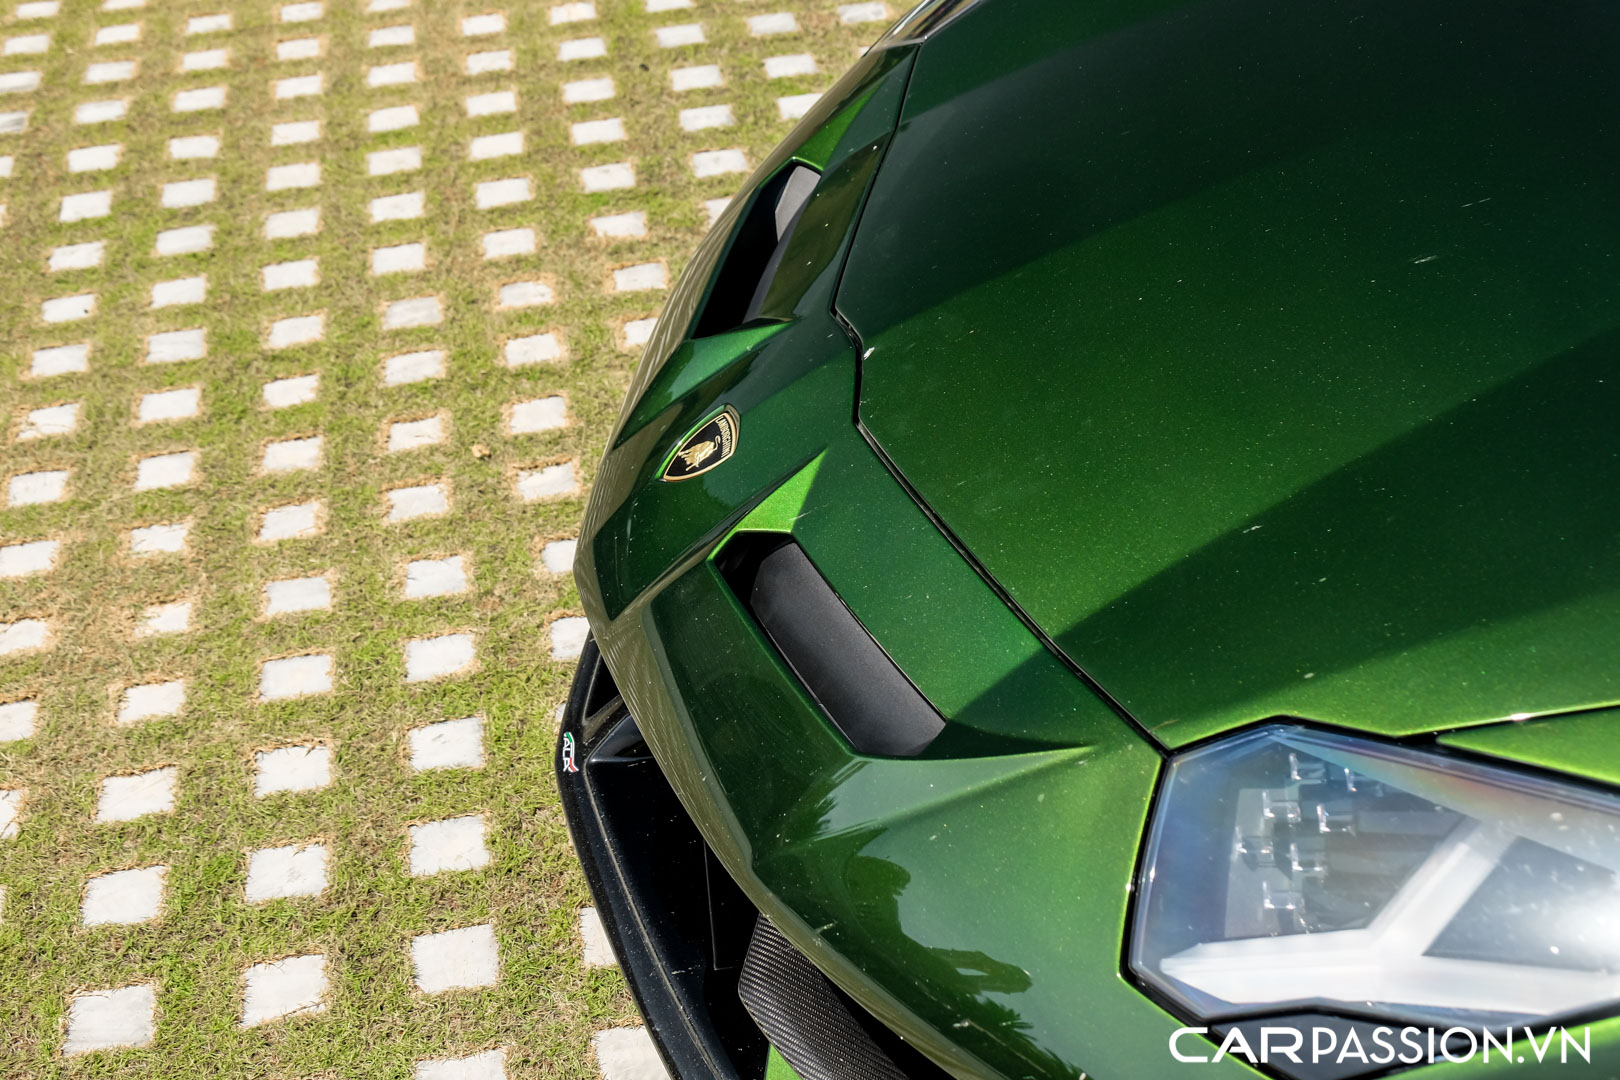 CP-Lamborghini Aventador SVJ Verde Ermes56.jpg